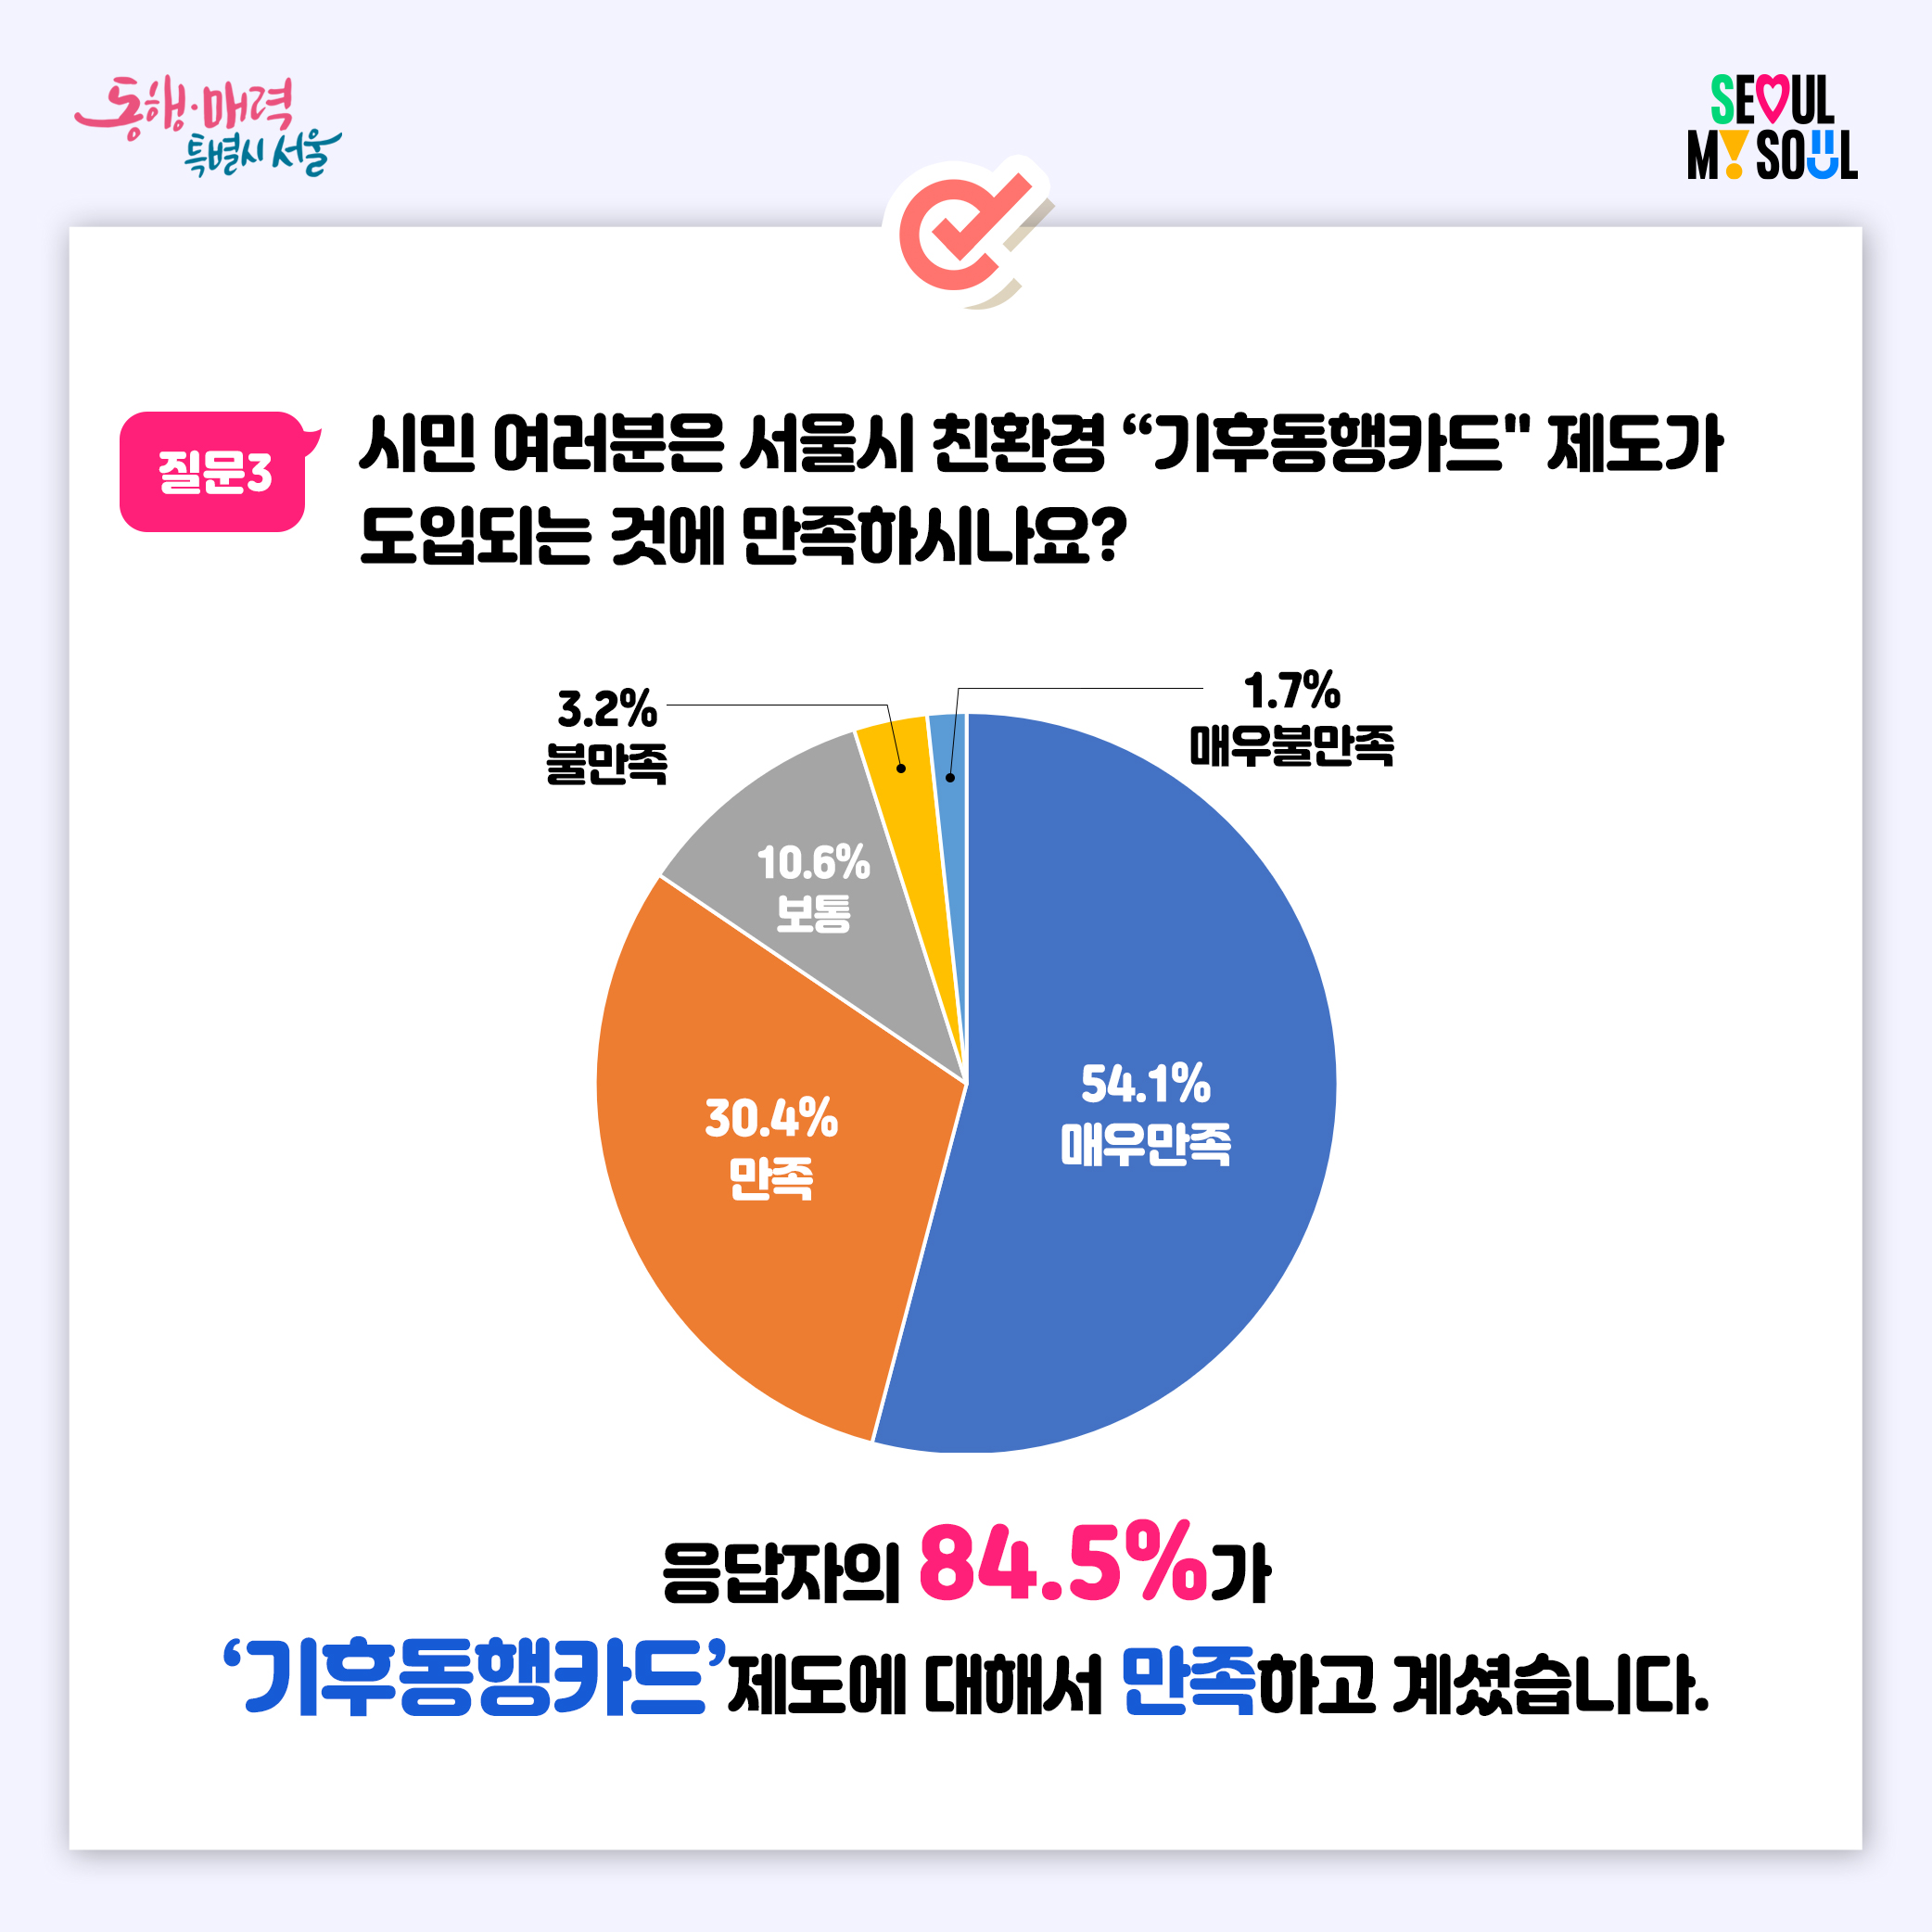 ㅇ질문3:시민 여러분은 서울시 친환경 '기후동행카드' 제도가 도입되는 것에 만족하시나요? 매우만족(54.1%), 만족(30.4%), 보통(10.6%), 불만족(3.2%), 매우불만족(1.7%)  - 응답자의 84.5%가 '기후동행카드'제도에 대해서 만족하고 계셨습니다.
